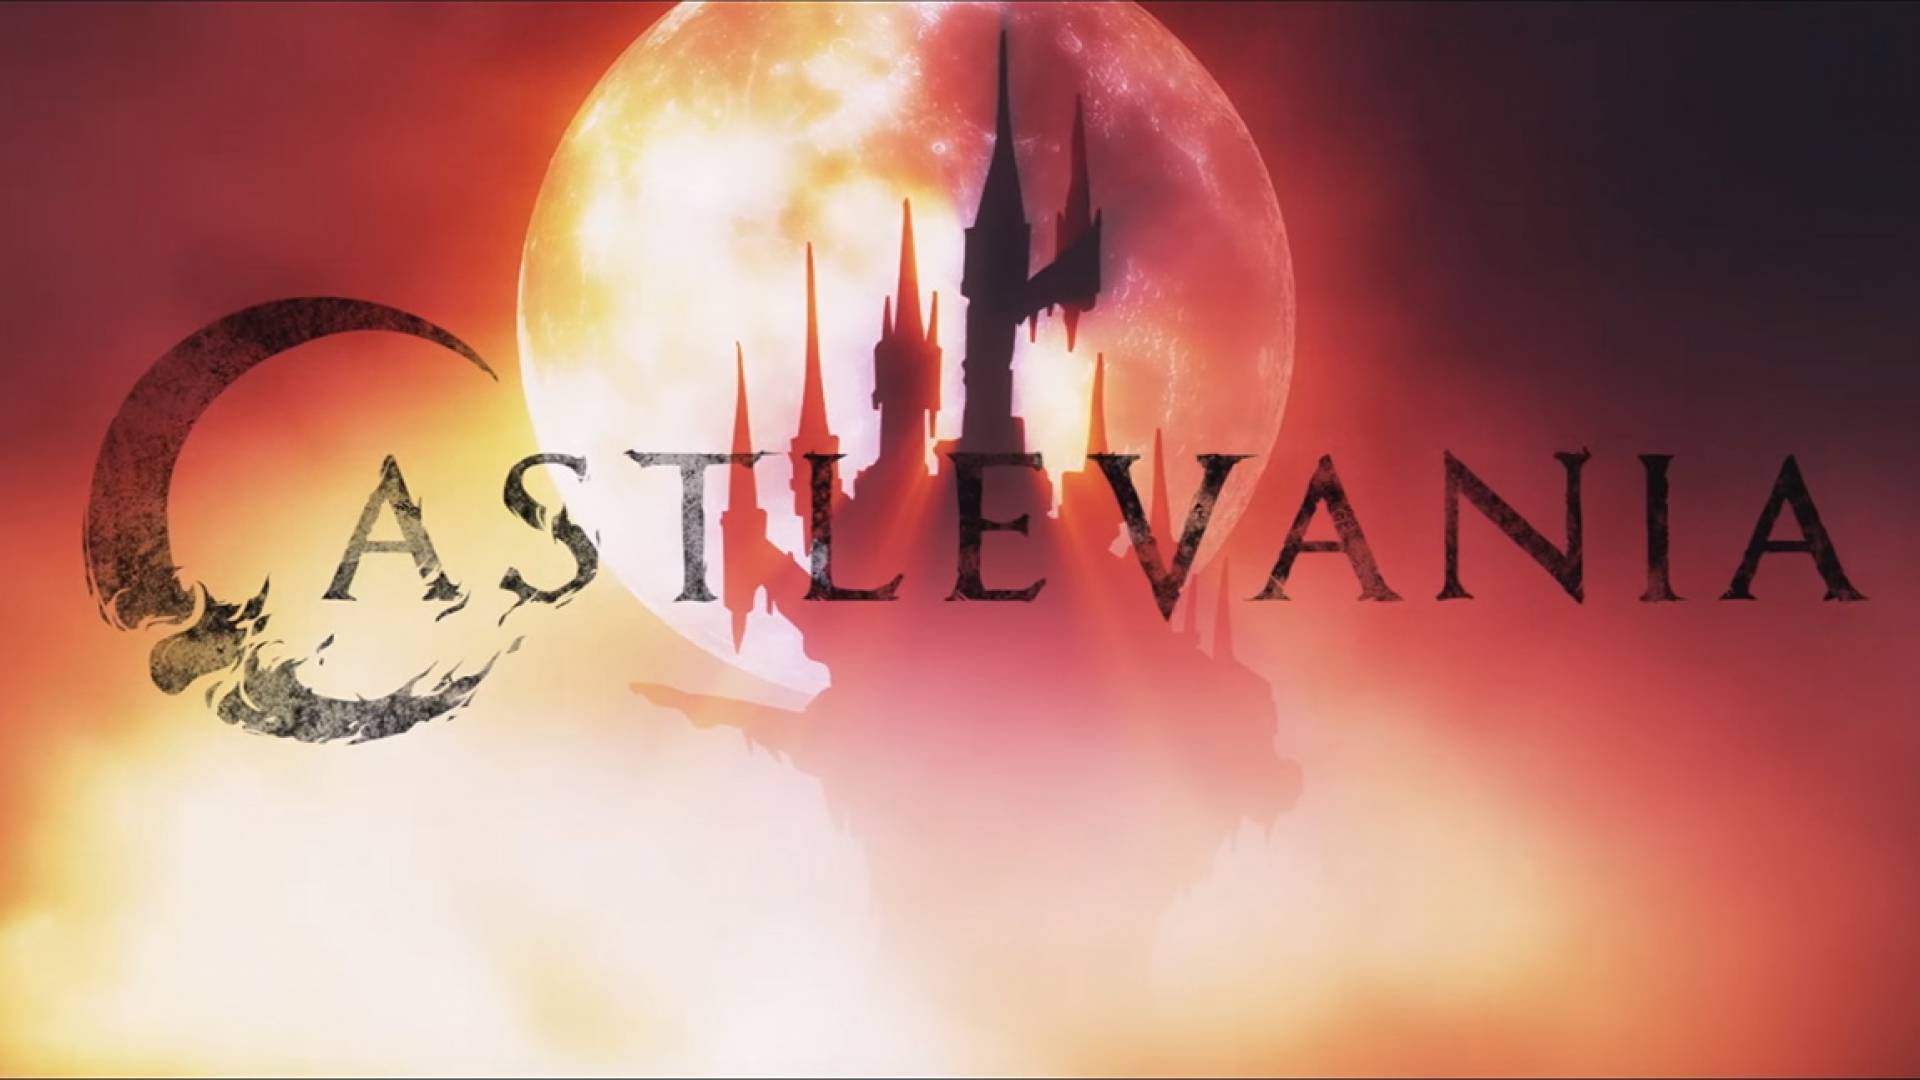 Watch Castlevania (Anime). Daily Anime Art